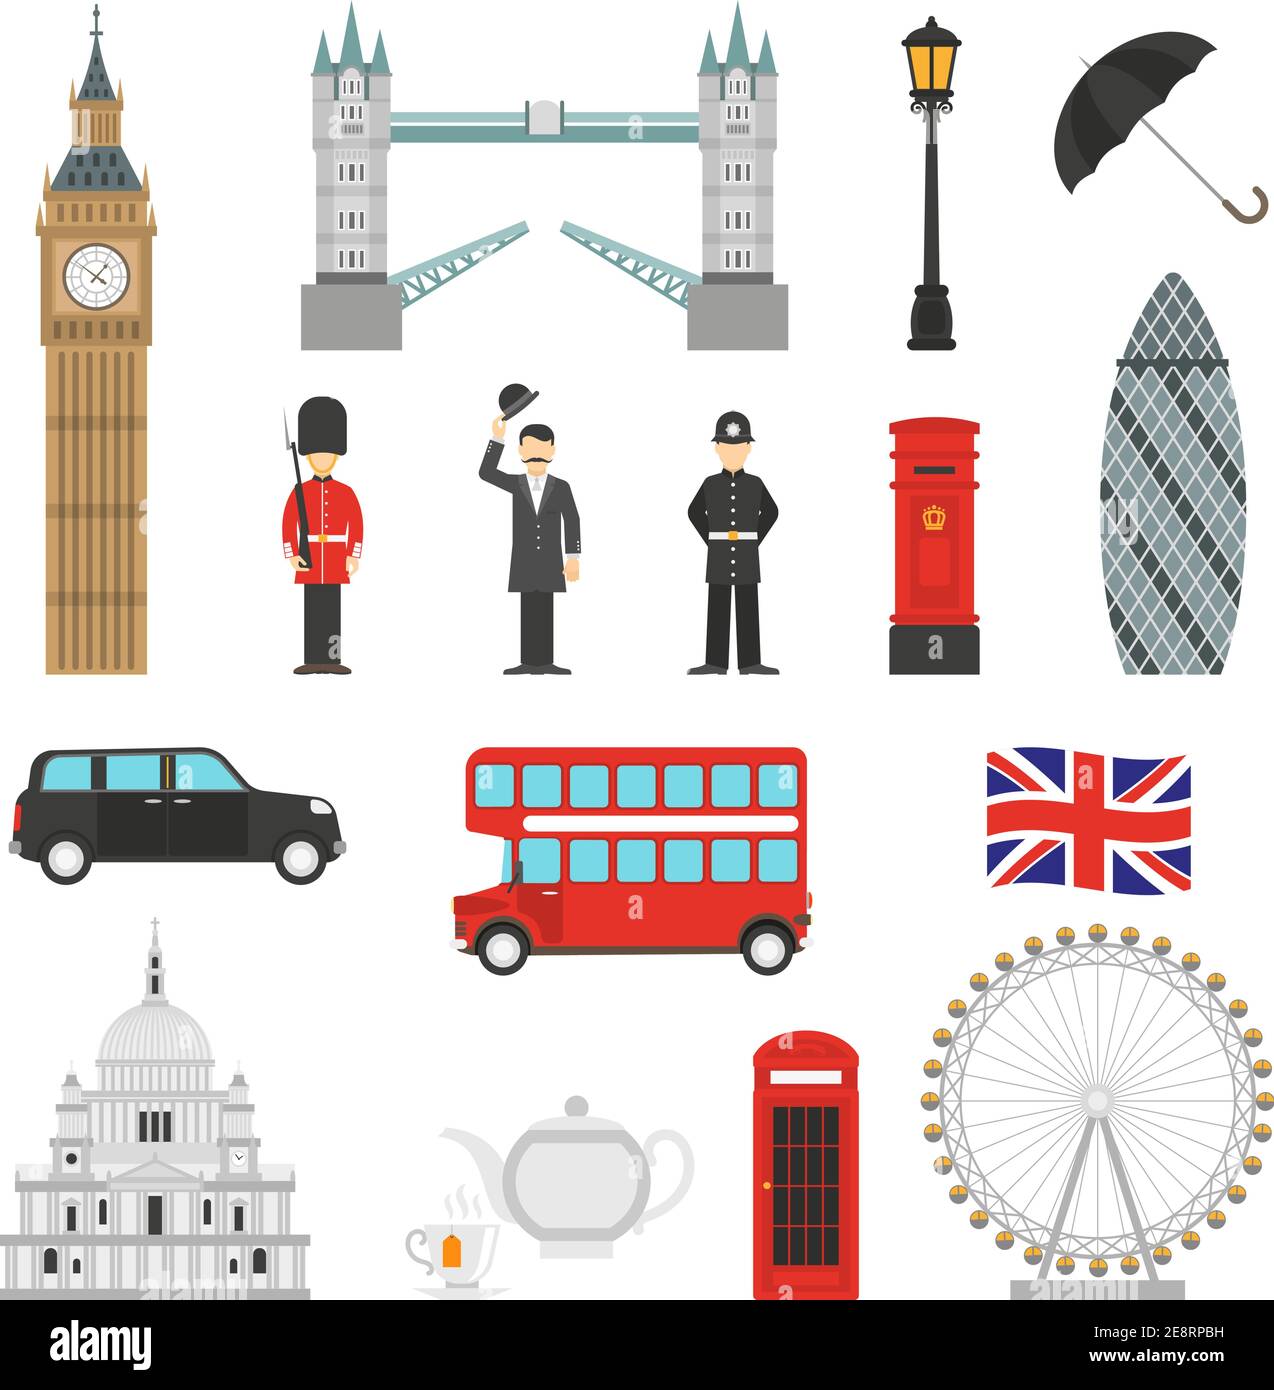 Londres monuments météo et traditions anglaises symboles isométriques icônes collections avec une illustration vectorielle abstraite isolée big ban Illustration de Vecteur